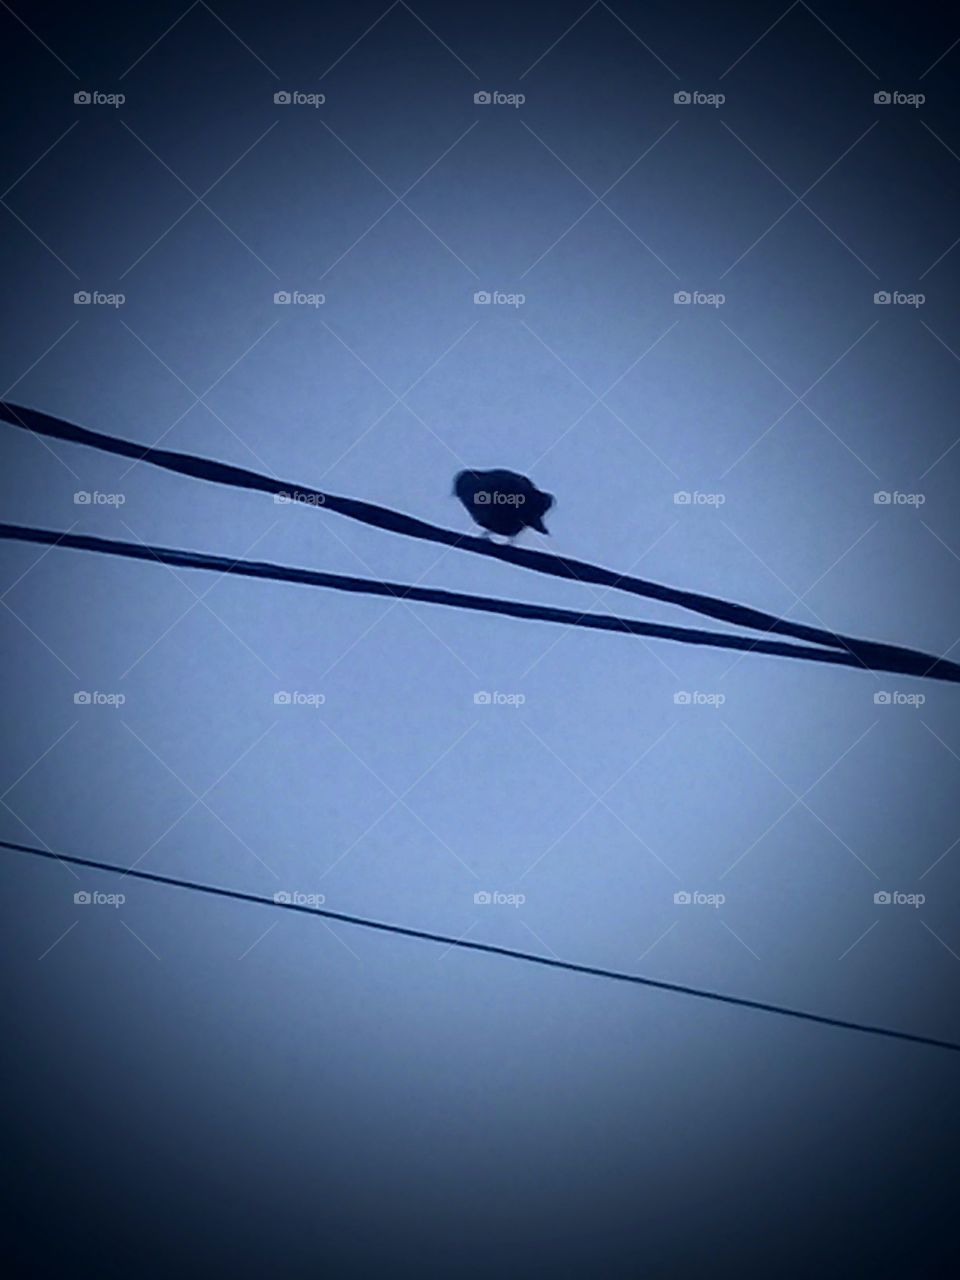 silueta de un pequeño pájaro posado sobre un grueso cable de alta tensión,  destacando sobre el cielo azul despejado.